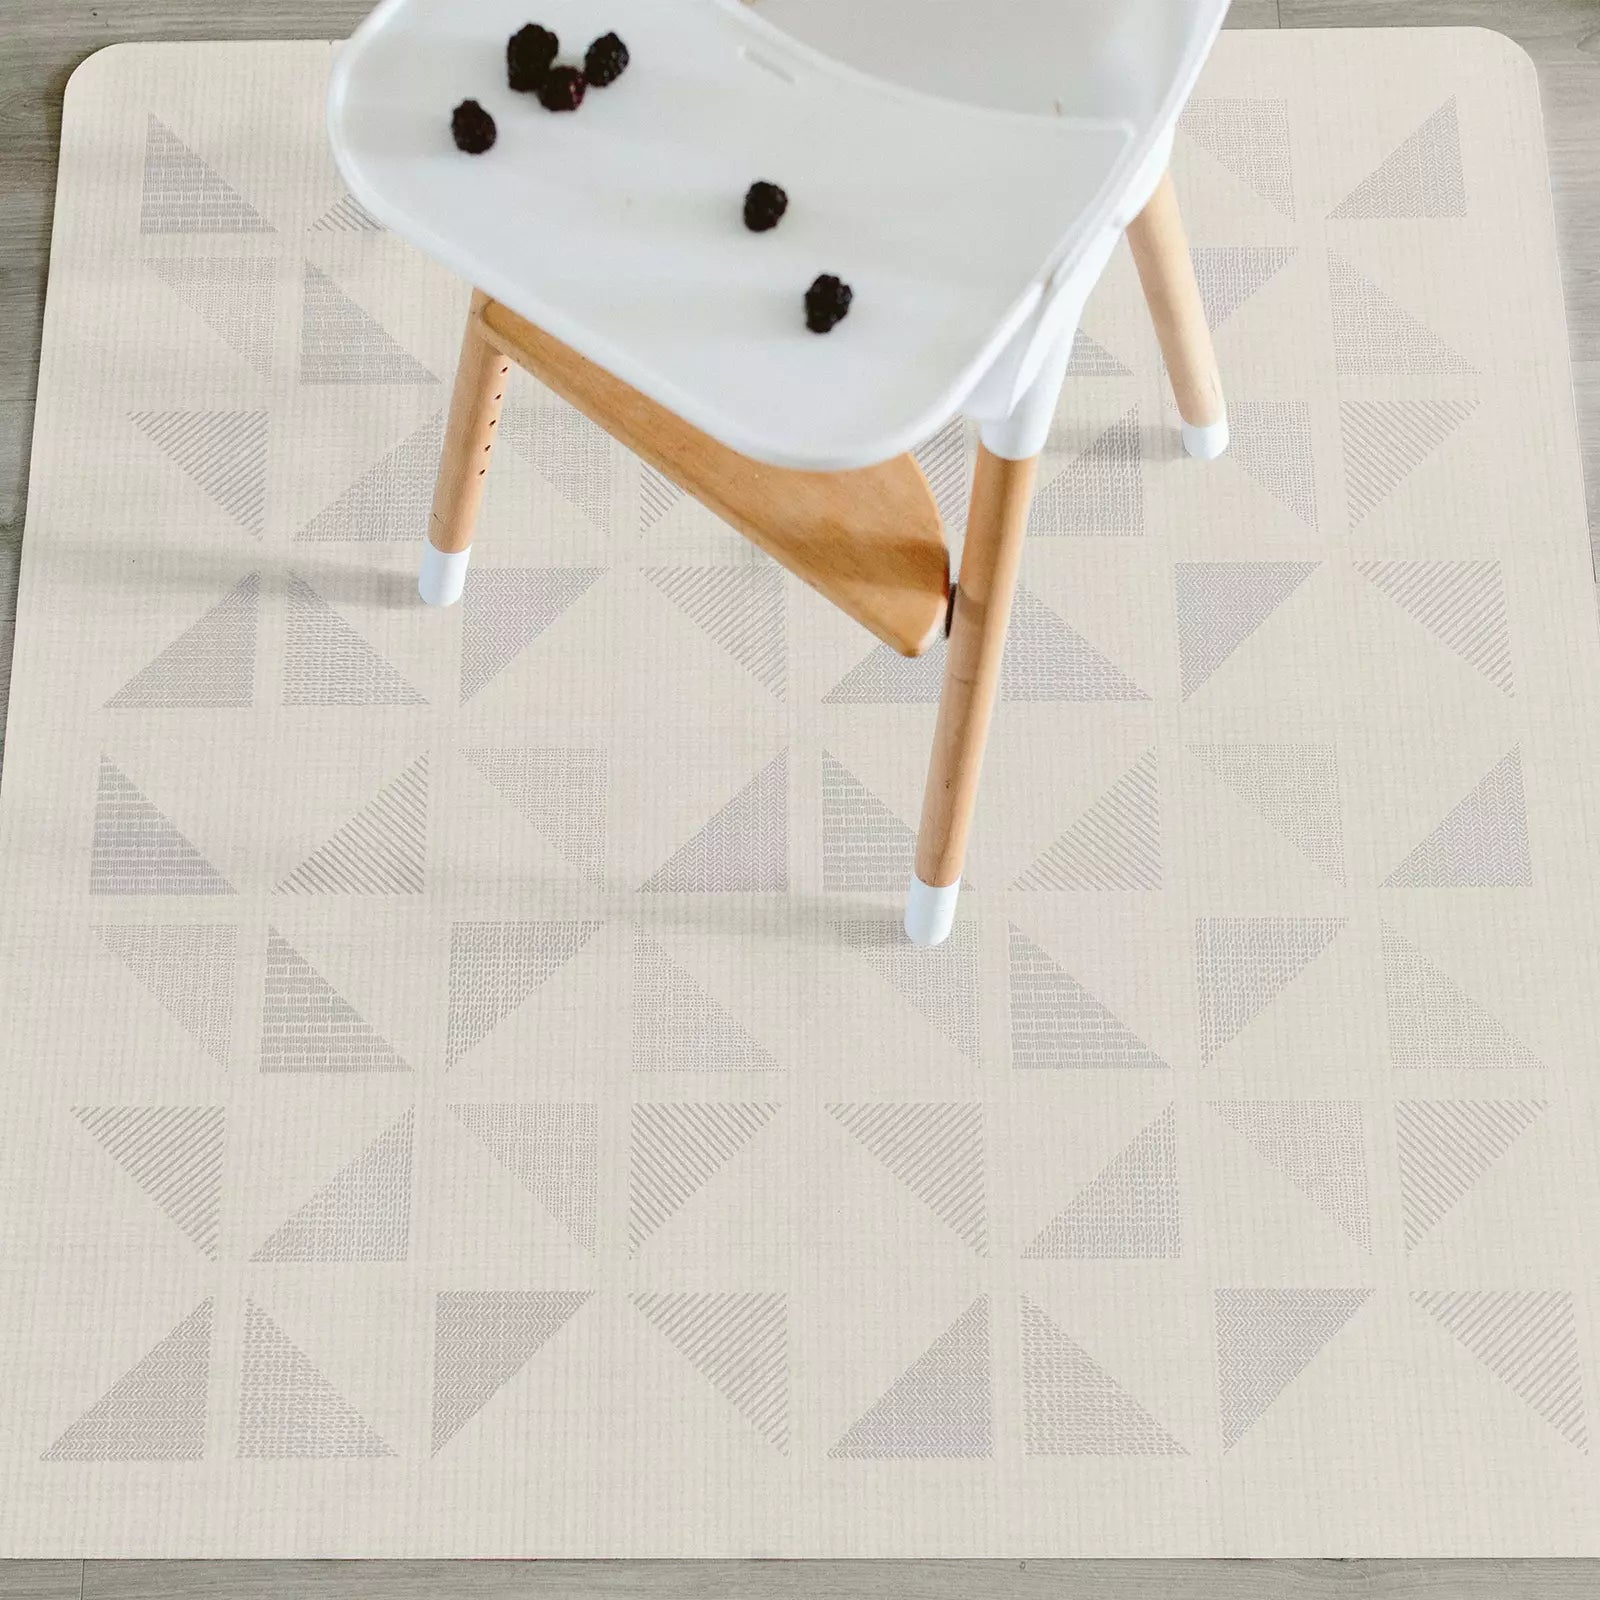 Terrazzo cream geometric high chair mat under high chair